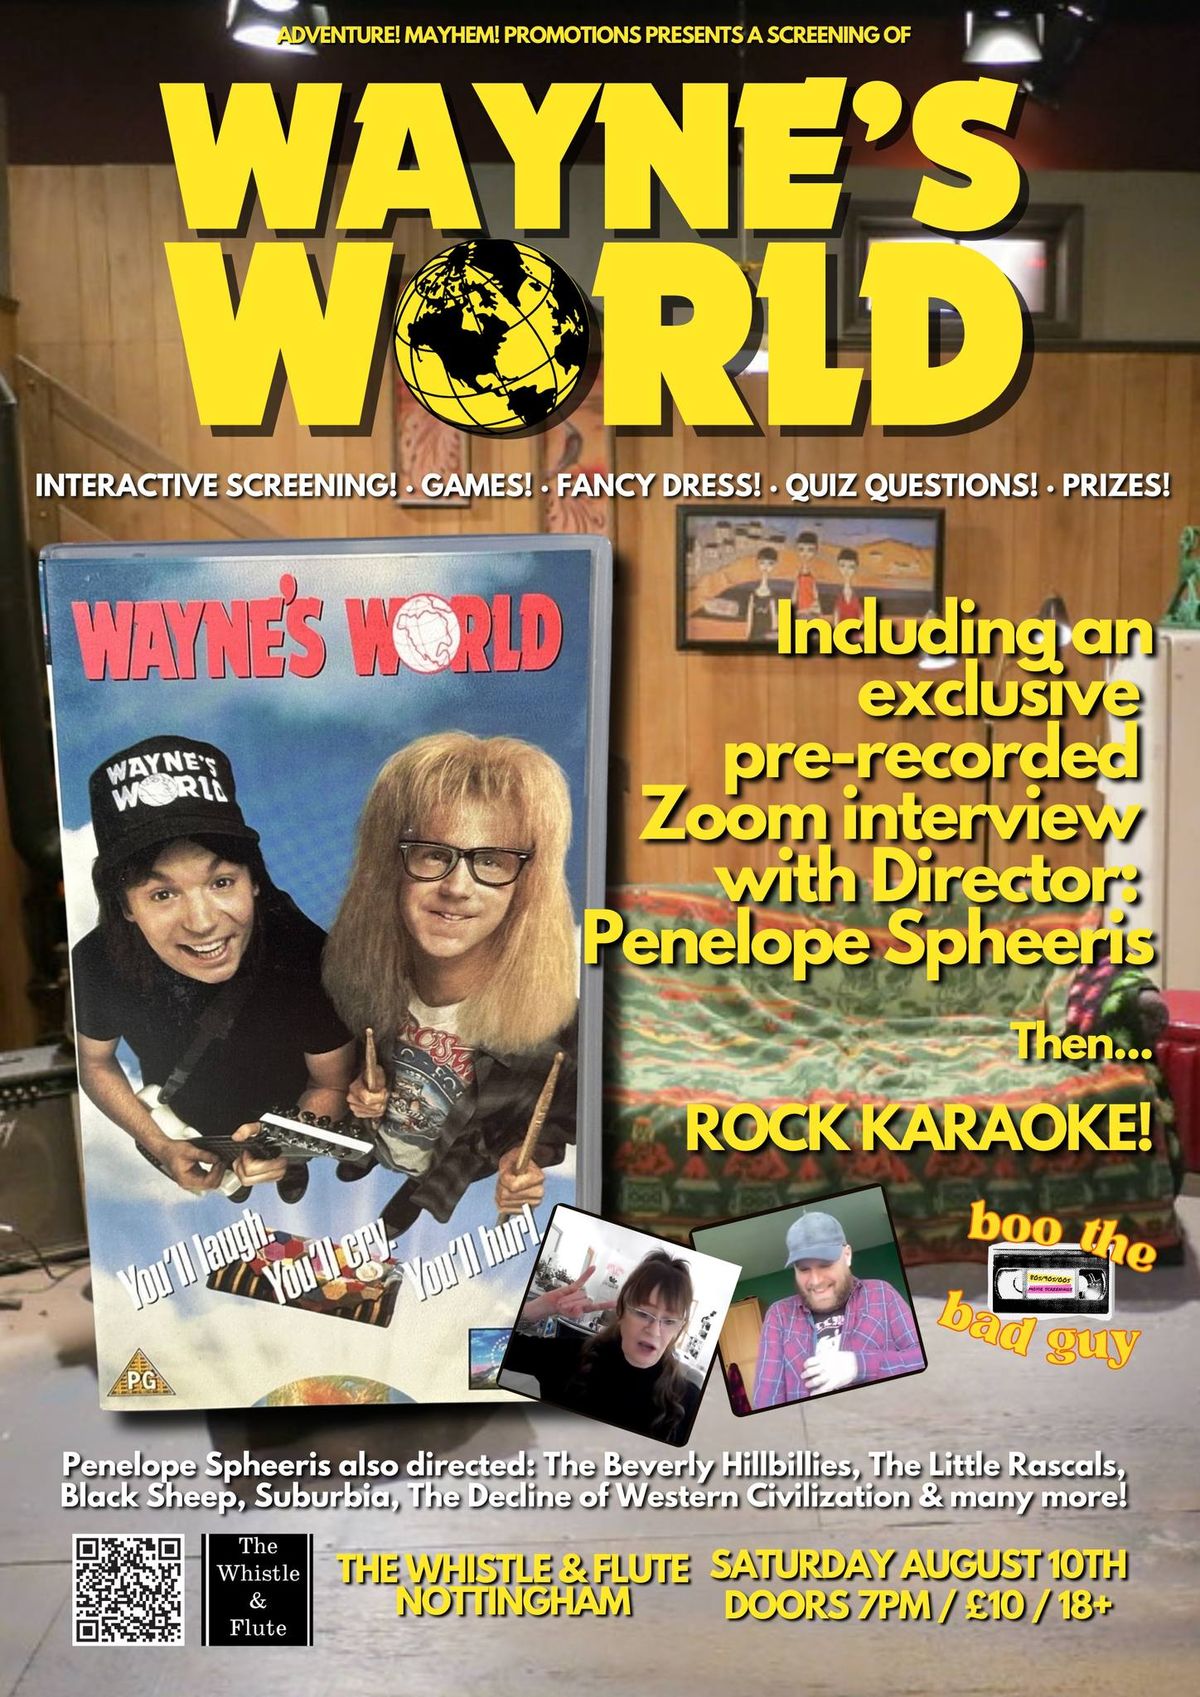 BTBG Presents: Wayne's World & Rock Karaoke + exclusive Director Zoom interview